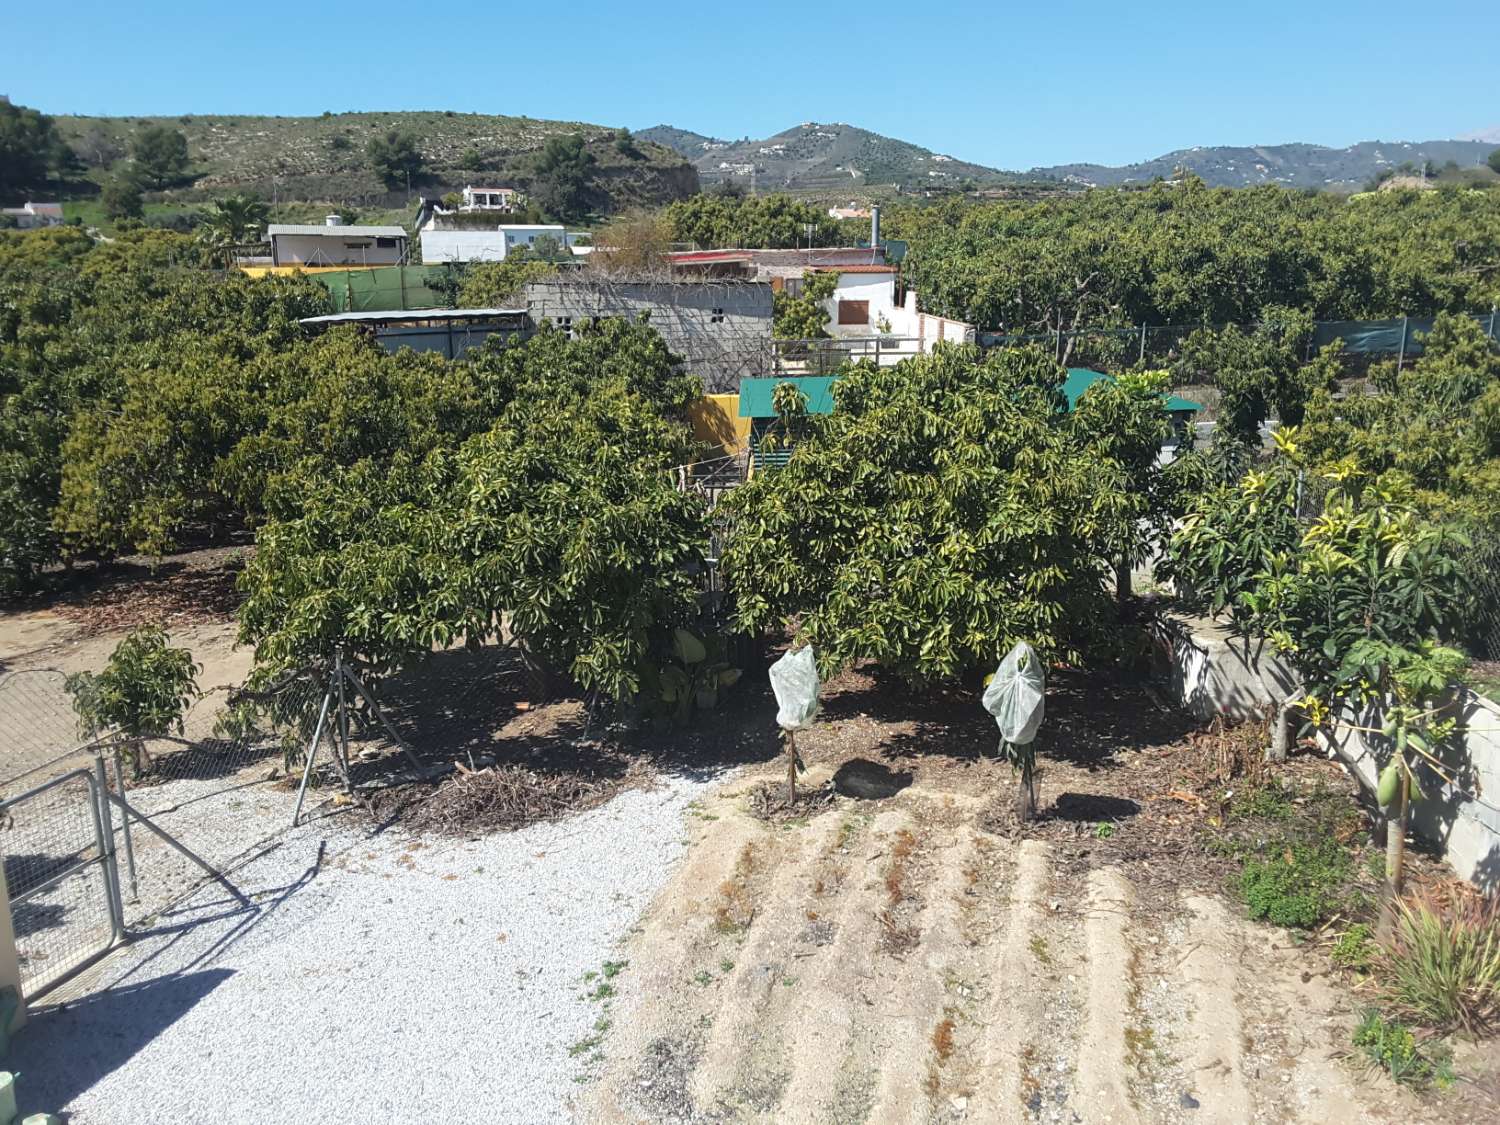 Schöner Bauernhof von Obstbäumen mit Cortijo mit Ställen, Reitplatz und Grill